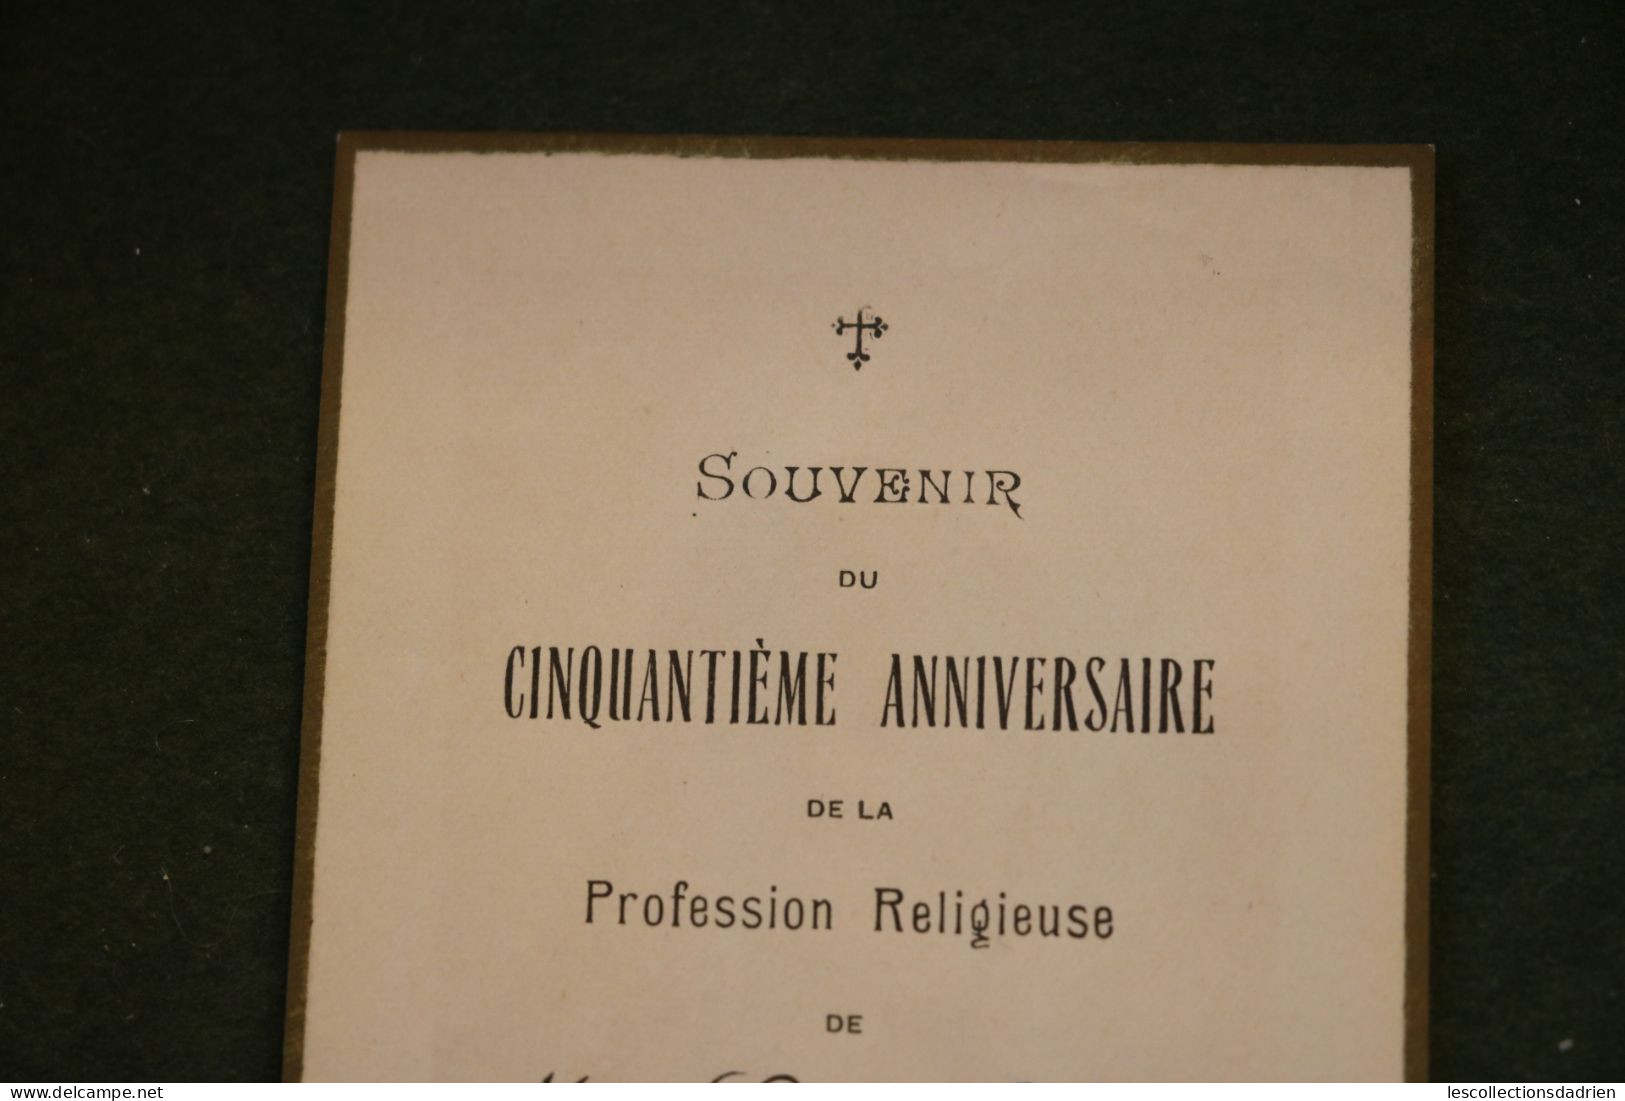 Image religieuse Cinquantième anniversaire de la Profession religieuse - 1882-1932  Valognes - Holy card